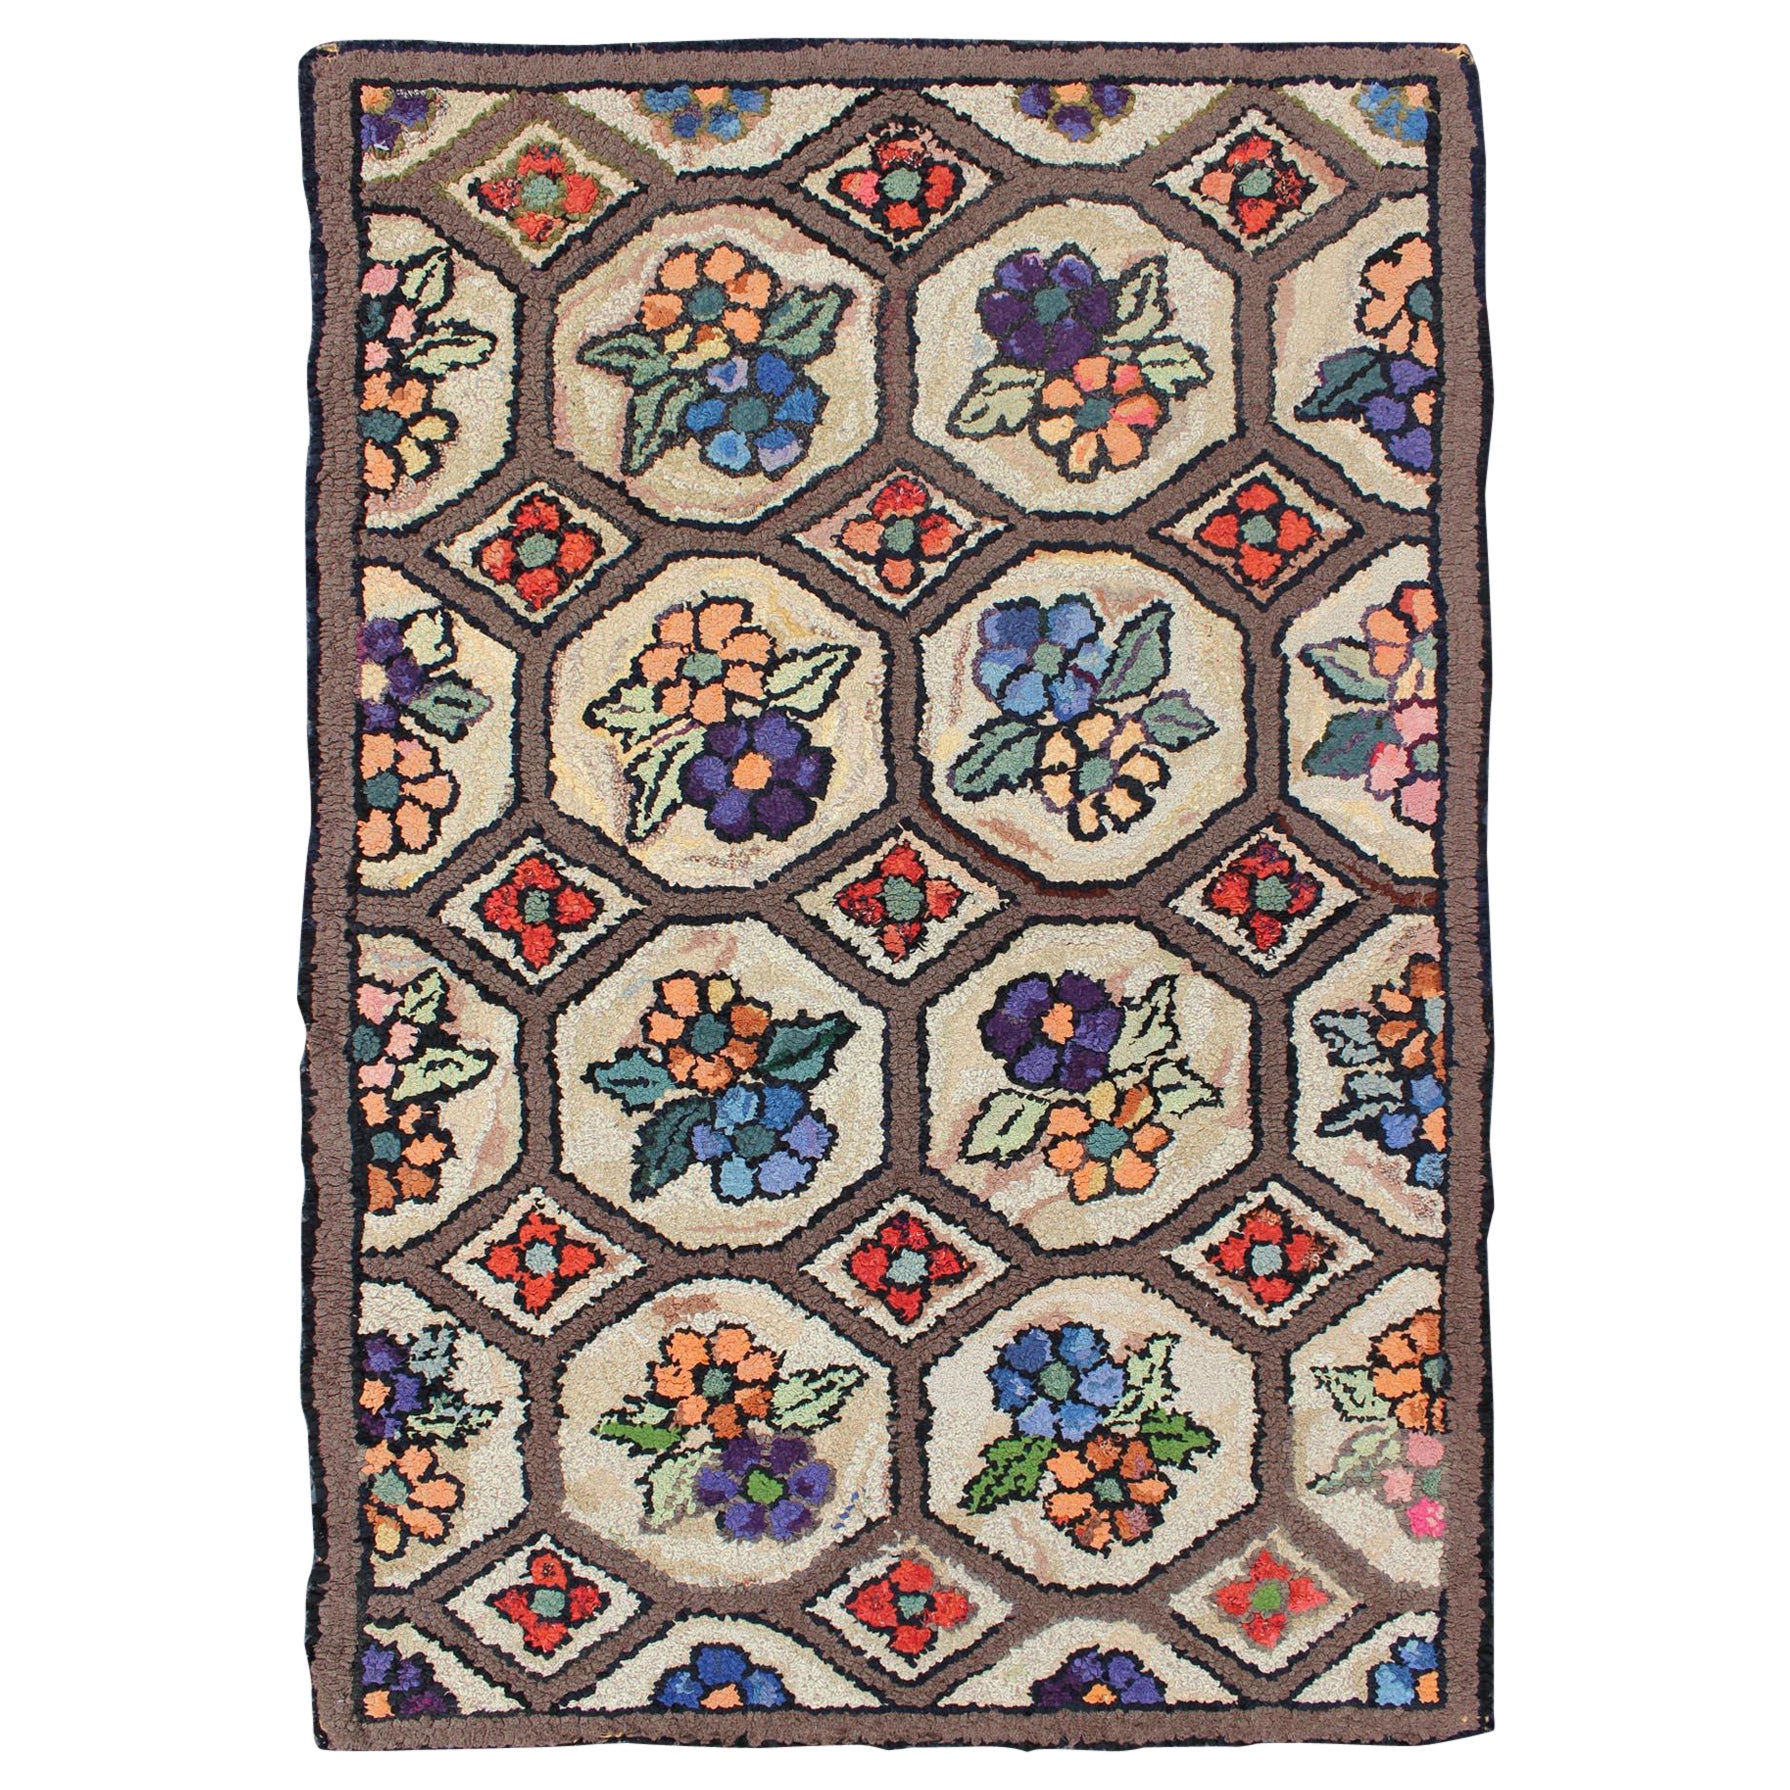 Remarquable tapis américain ancien à capuche avec motifs floraux sur toute sa surface